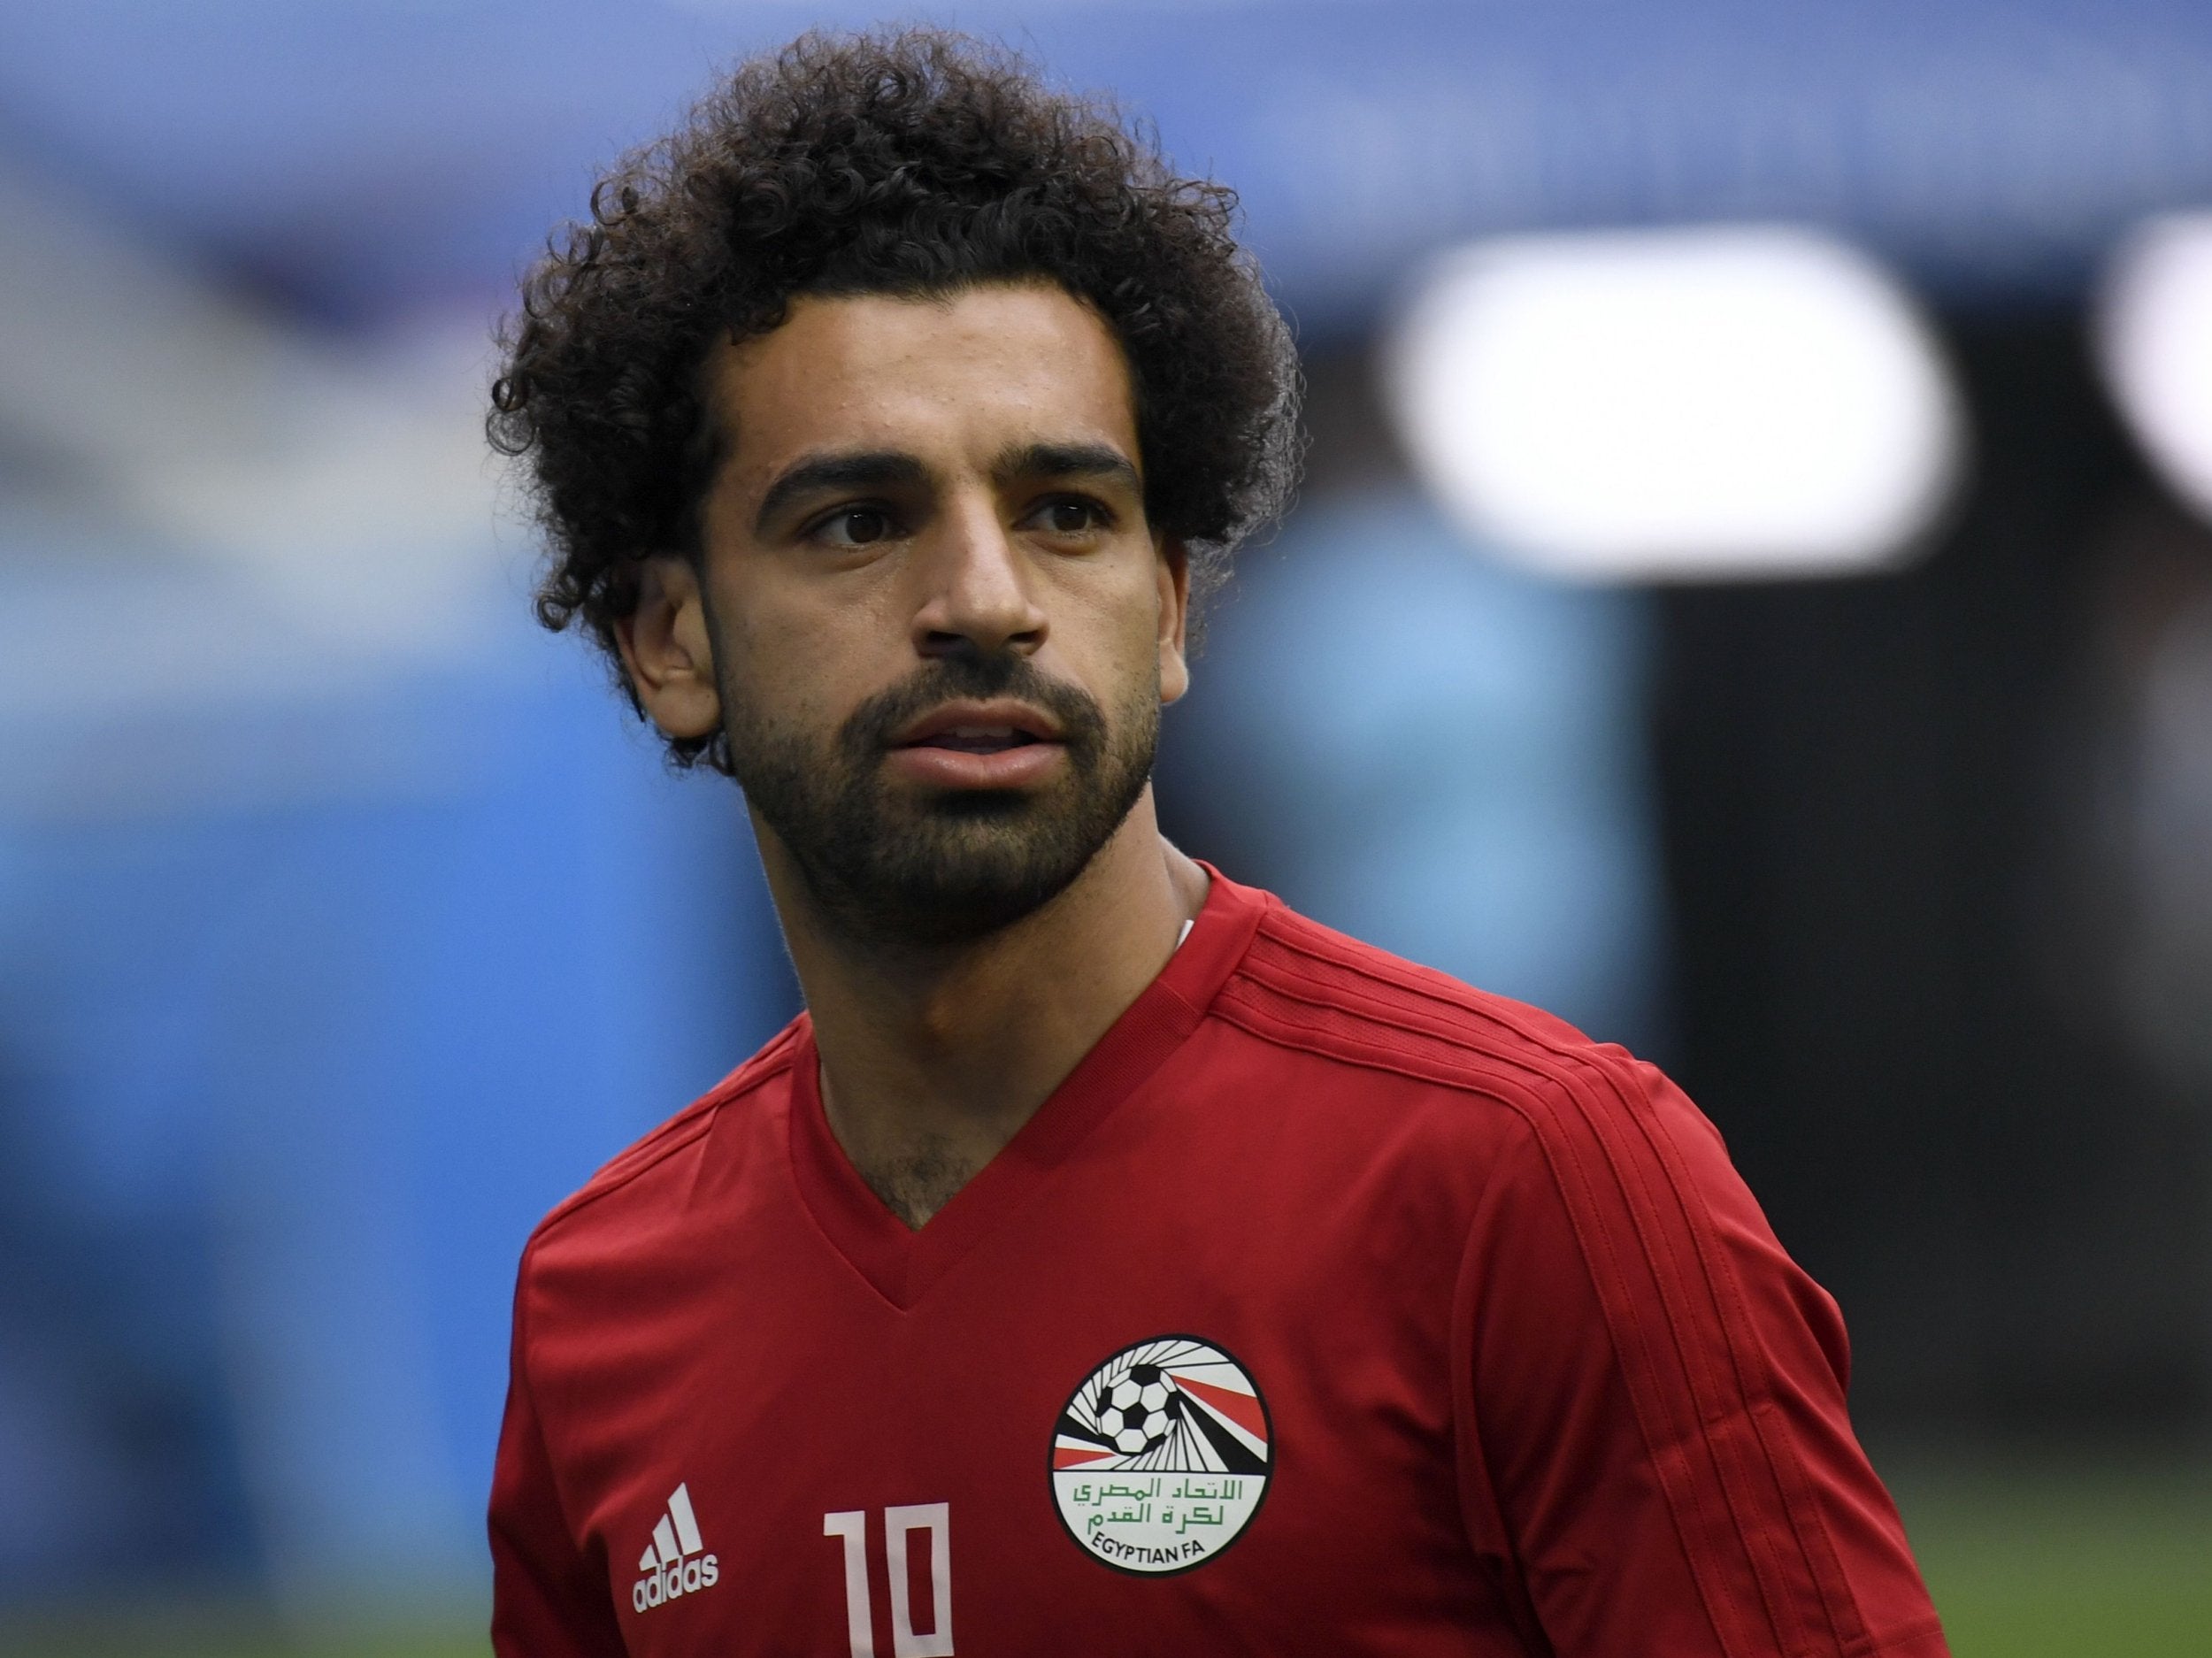 Egypt's forward Mohamed Salah attends a training session